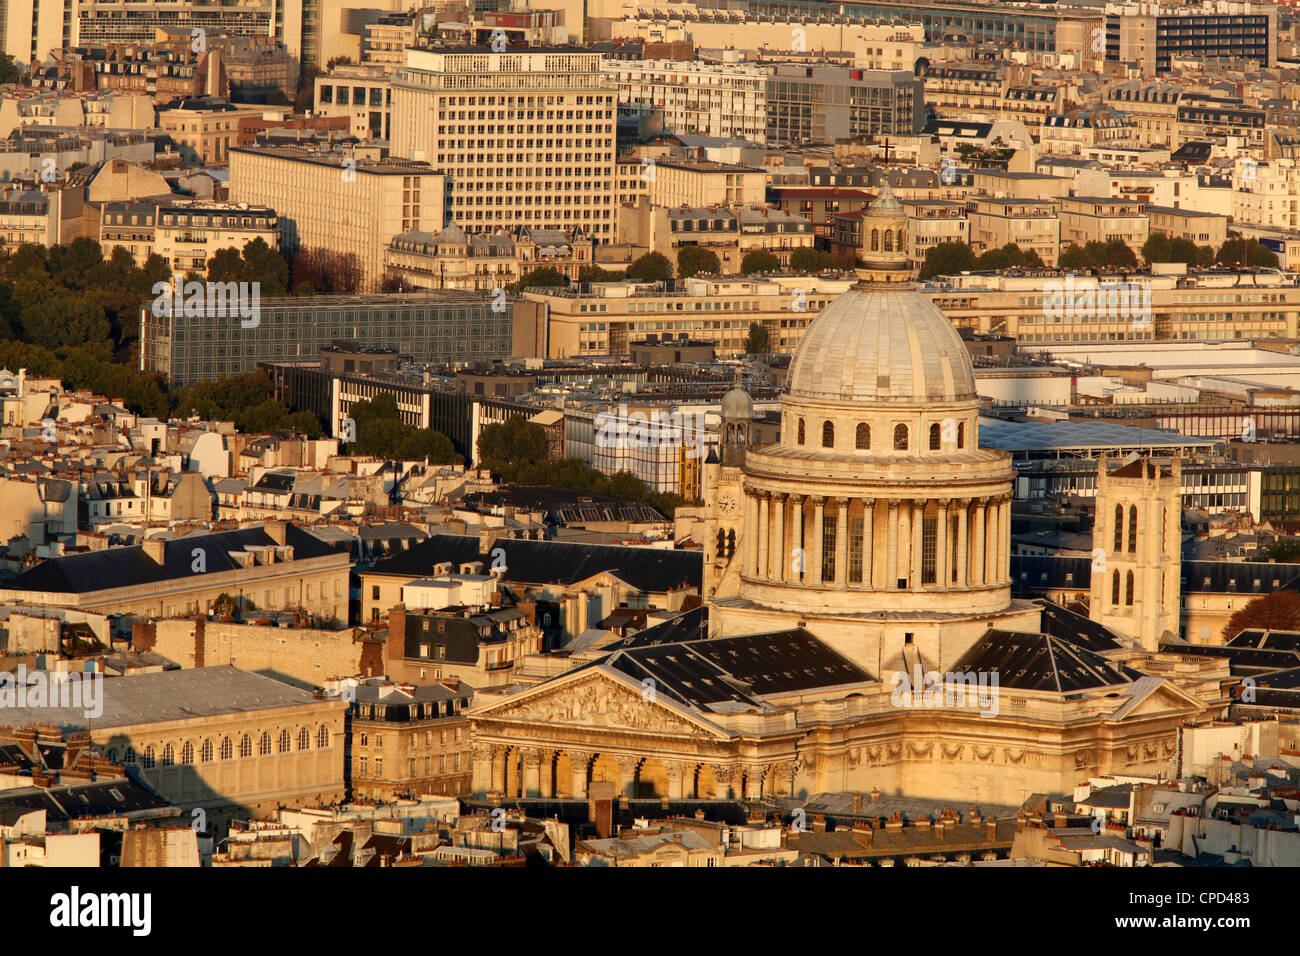 Vue aérienne de Paris autour du Panthéon, Paris, France, Europe Banque D'Images